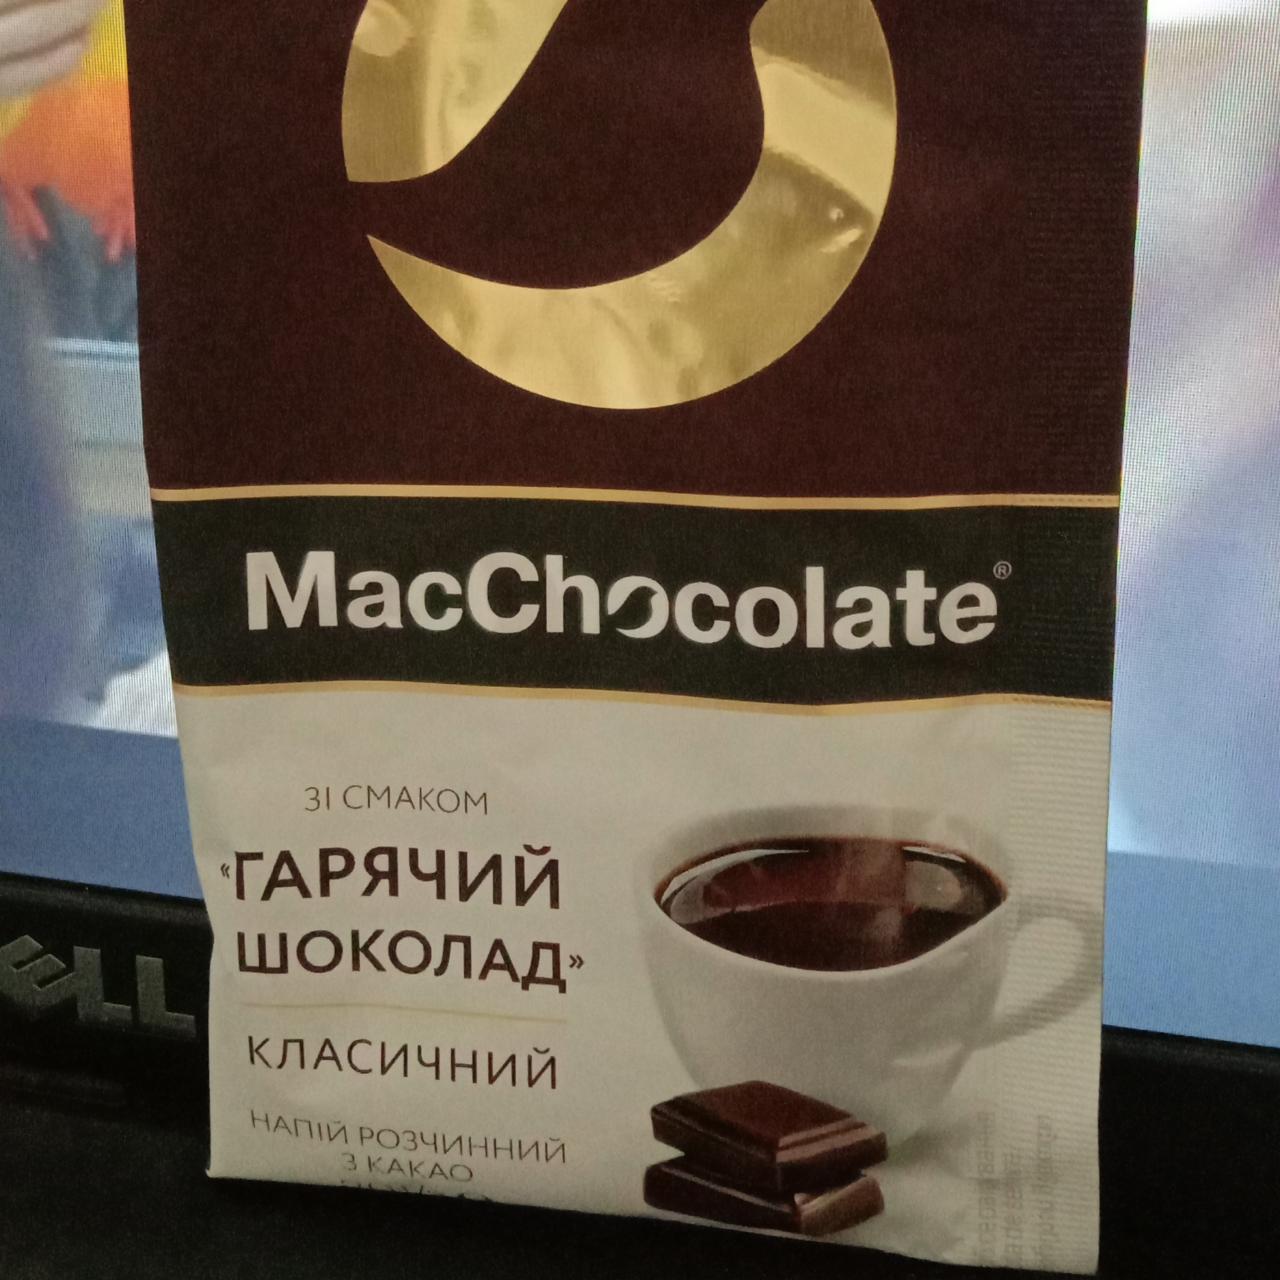 Фото - зі смаком 'гарячий шоколад' класичний напій розчинне з какао MacChocolate